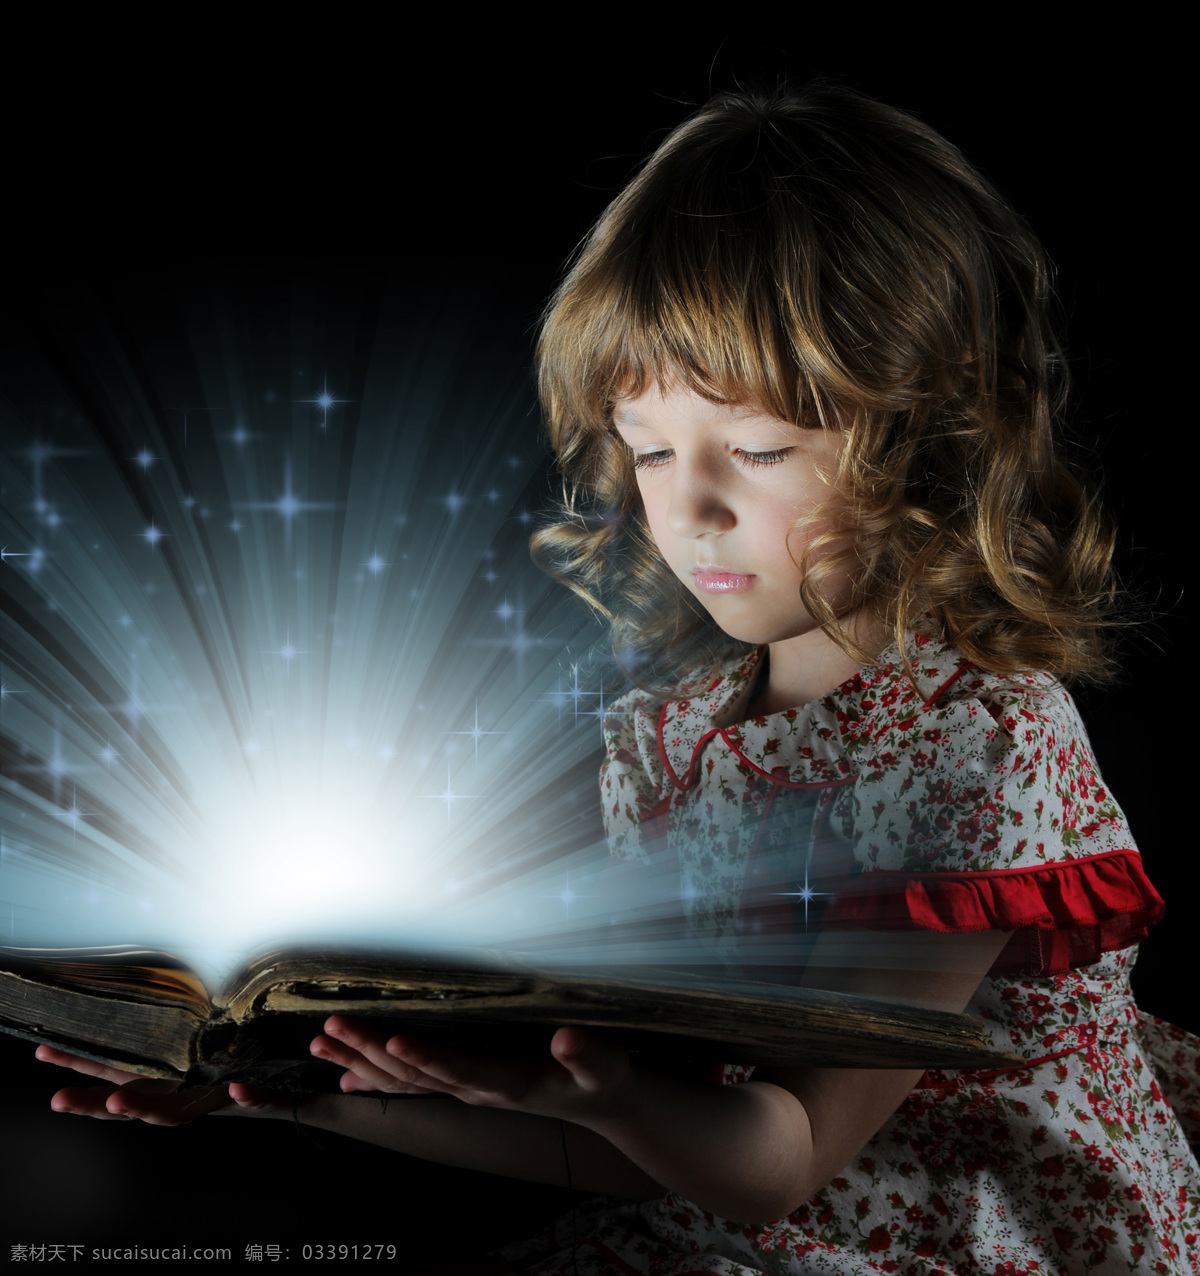 小女孩 发光 书本 发光的书本 外国女孩 书籍 学习知识 看书的女孩 儿童图片 人物图片